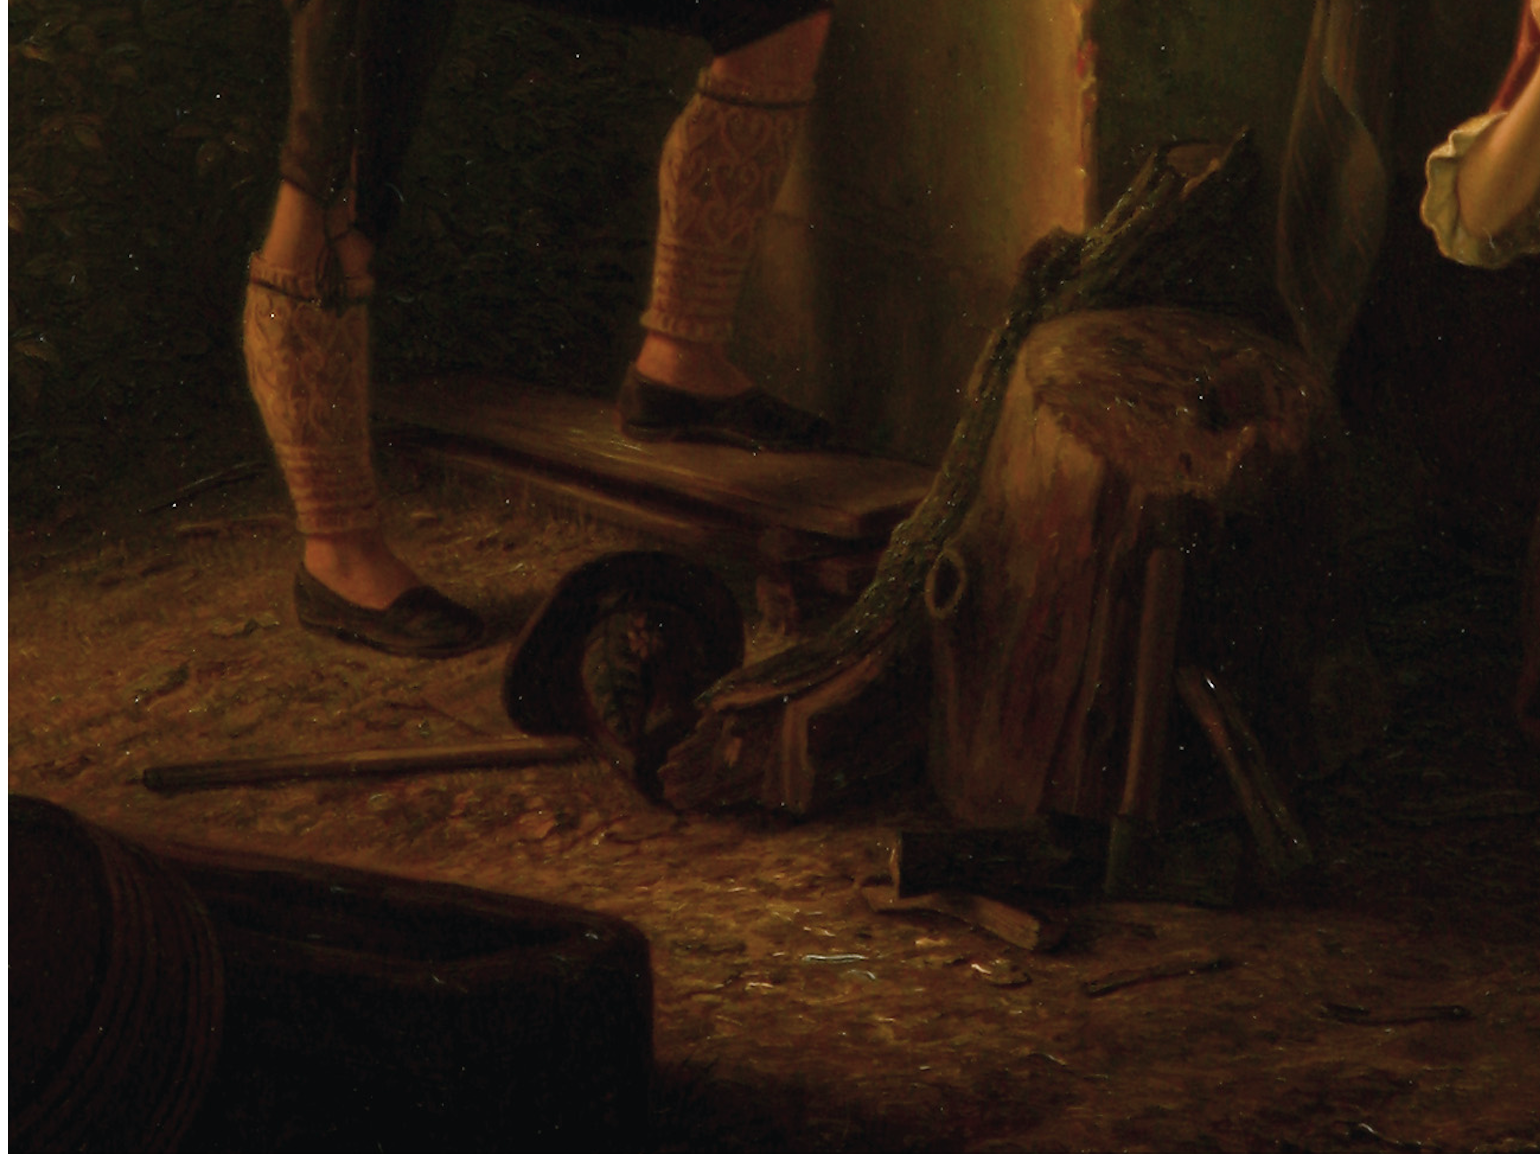 August Ludwig Most, Pień, ułamany konar, szczapy, siekiera i rzucony kapelusz, fragment obrazu Podsłuchiwana randka, 1844, olej na płótnie, Muzeum Narodowe w Szczecinie